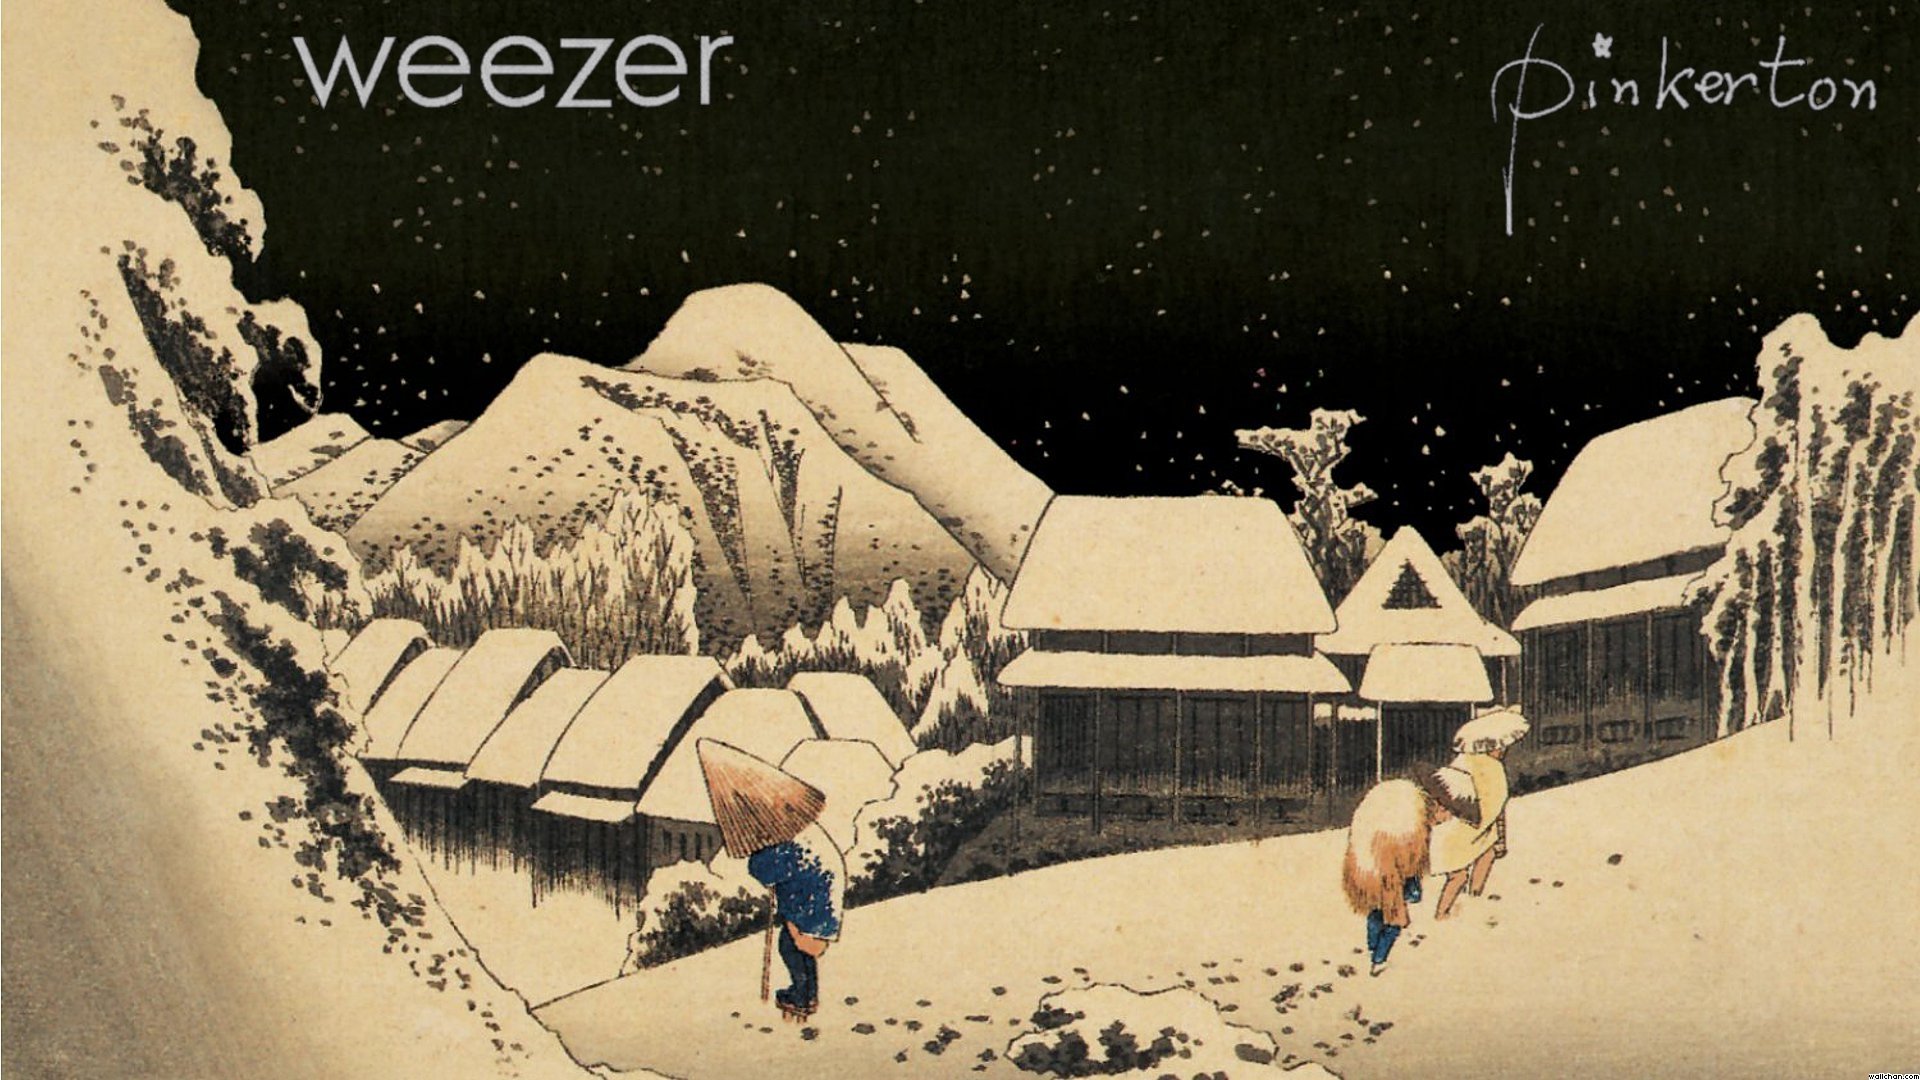 Weezer Wallpaper Full HD 1080p Desktop